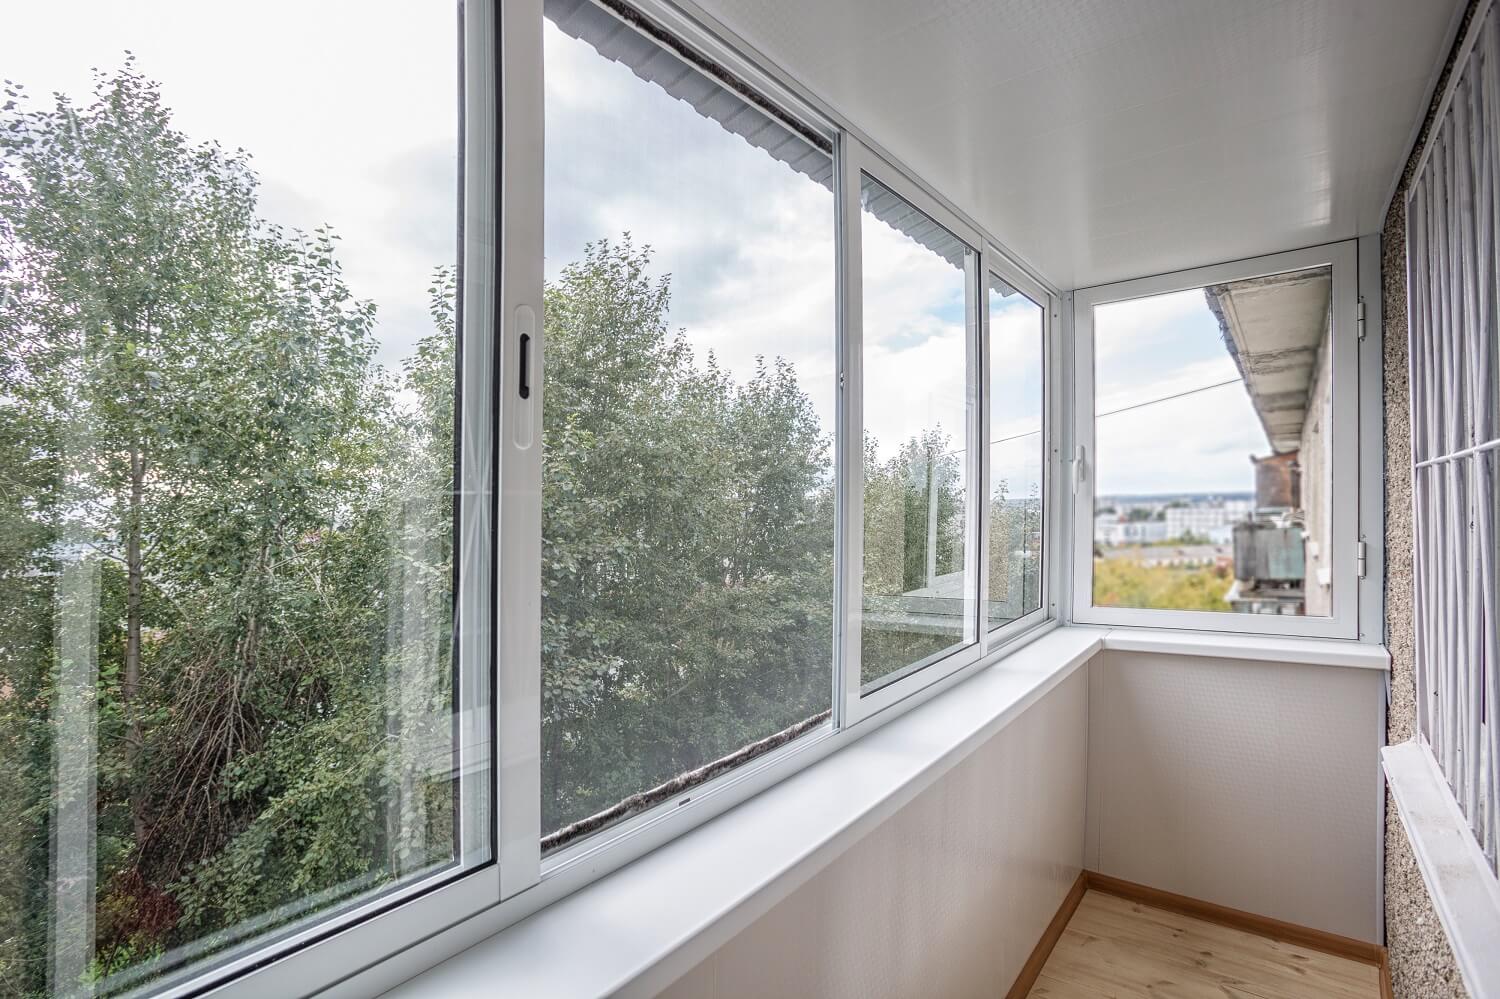 Какие балконы лучше пластиковые или алюминиевые: окна, чем застеклить, остекление, отзывы, фото, - легкое дело